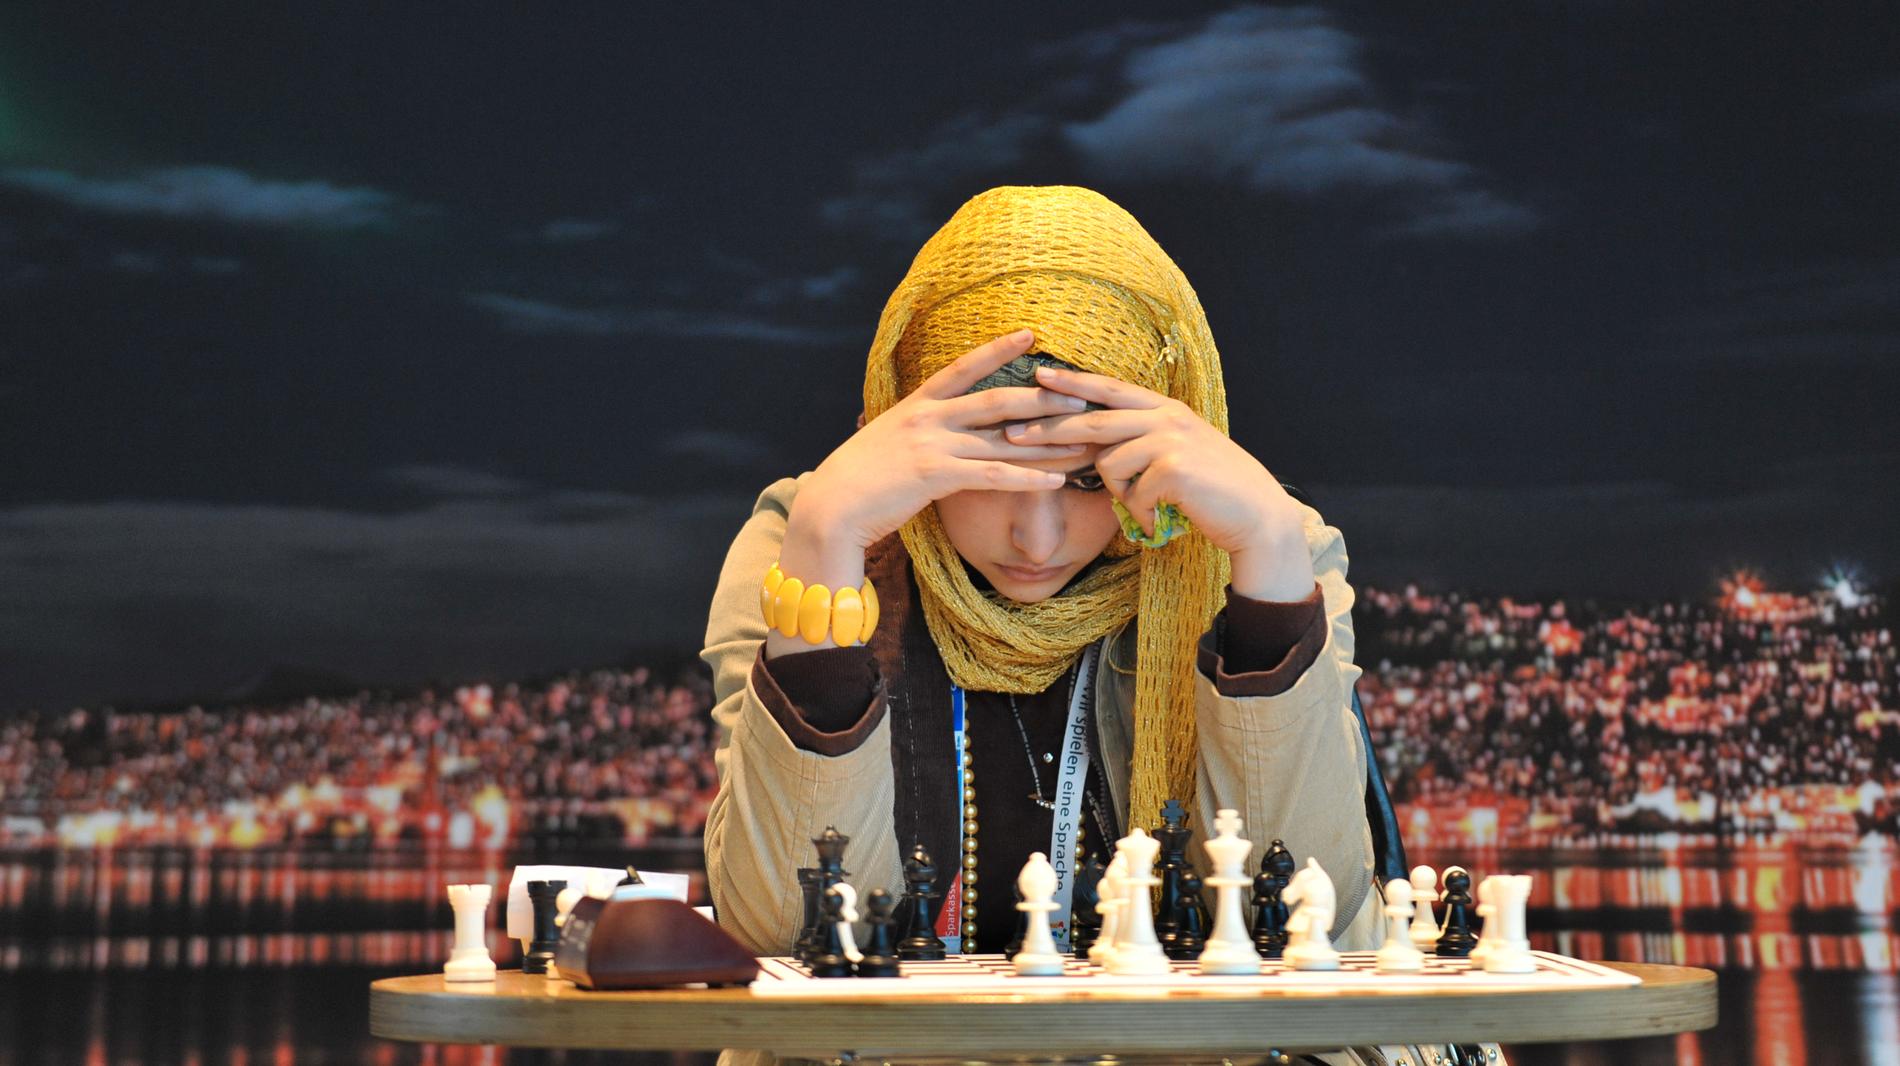 Flera kvinnliga schackspelare rasar mot beslutet att sponsras av bröstförstoringsföretag. Arkivbild från schackolympiaden 2008, Alaa Garmal från Egypten.